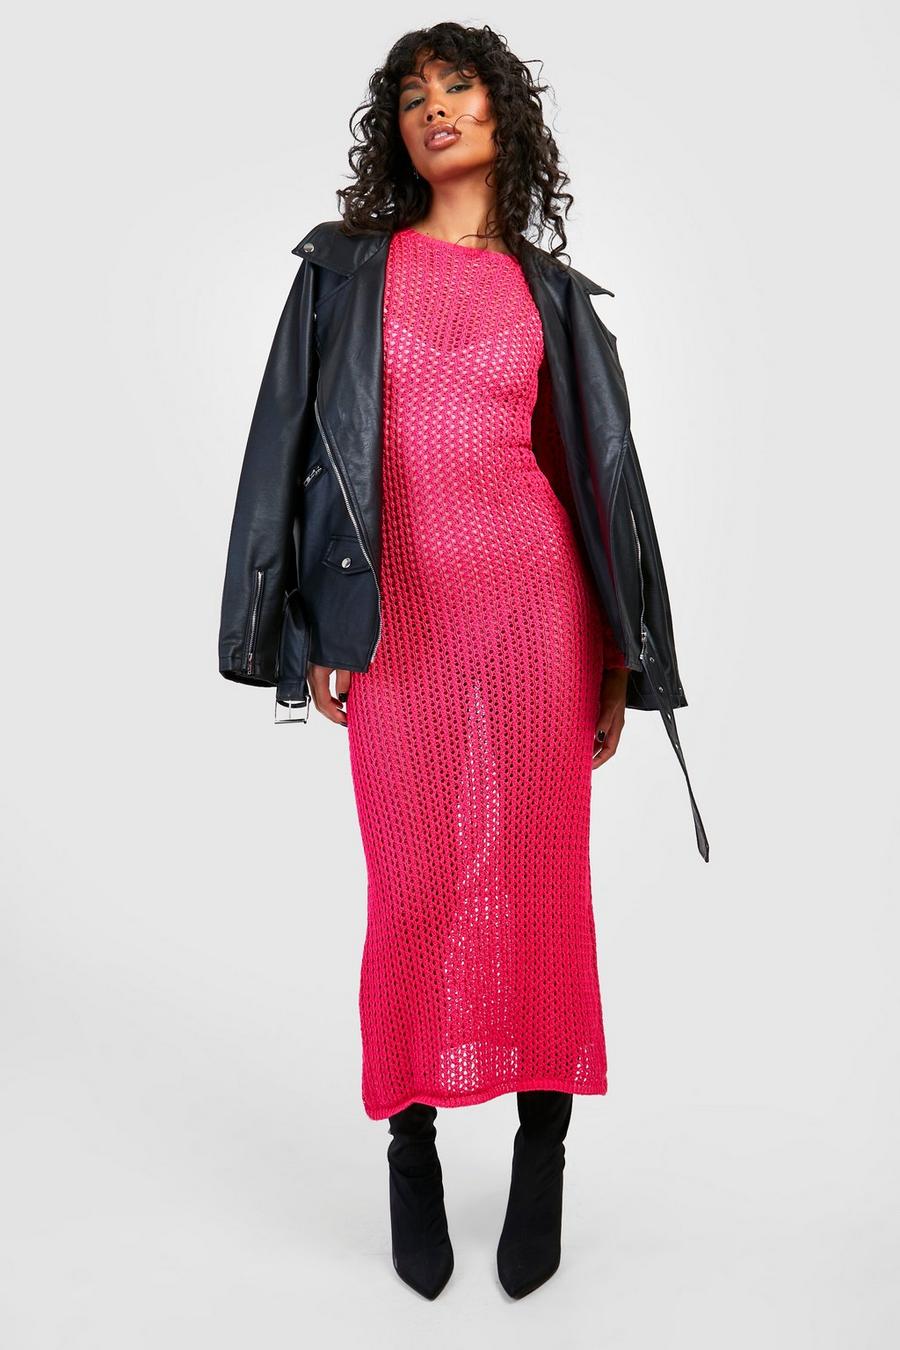 Hot pink Crochet Maxi Dress